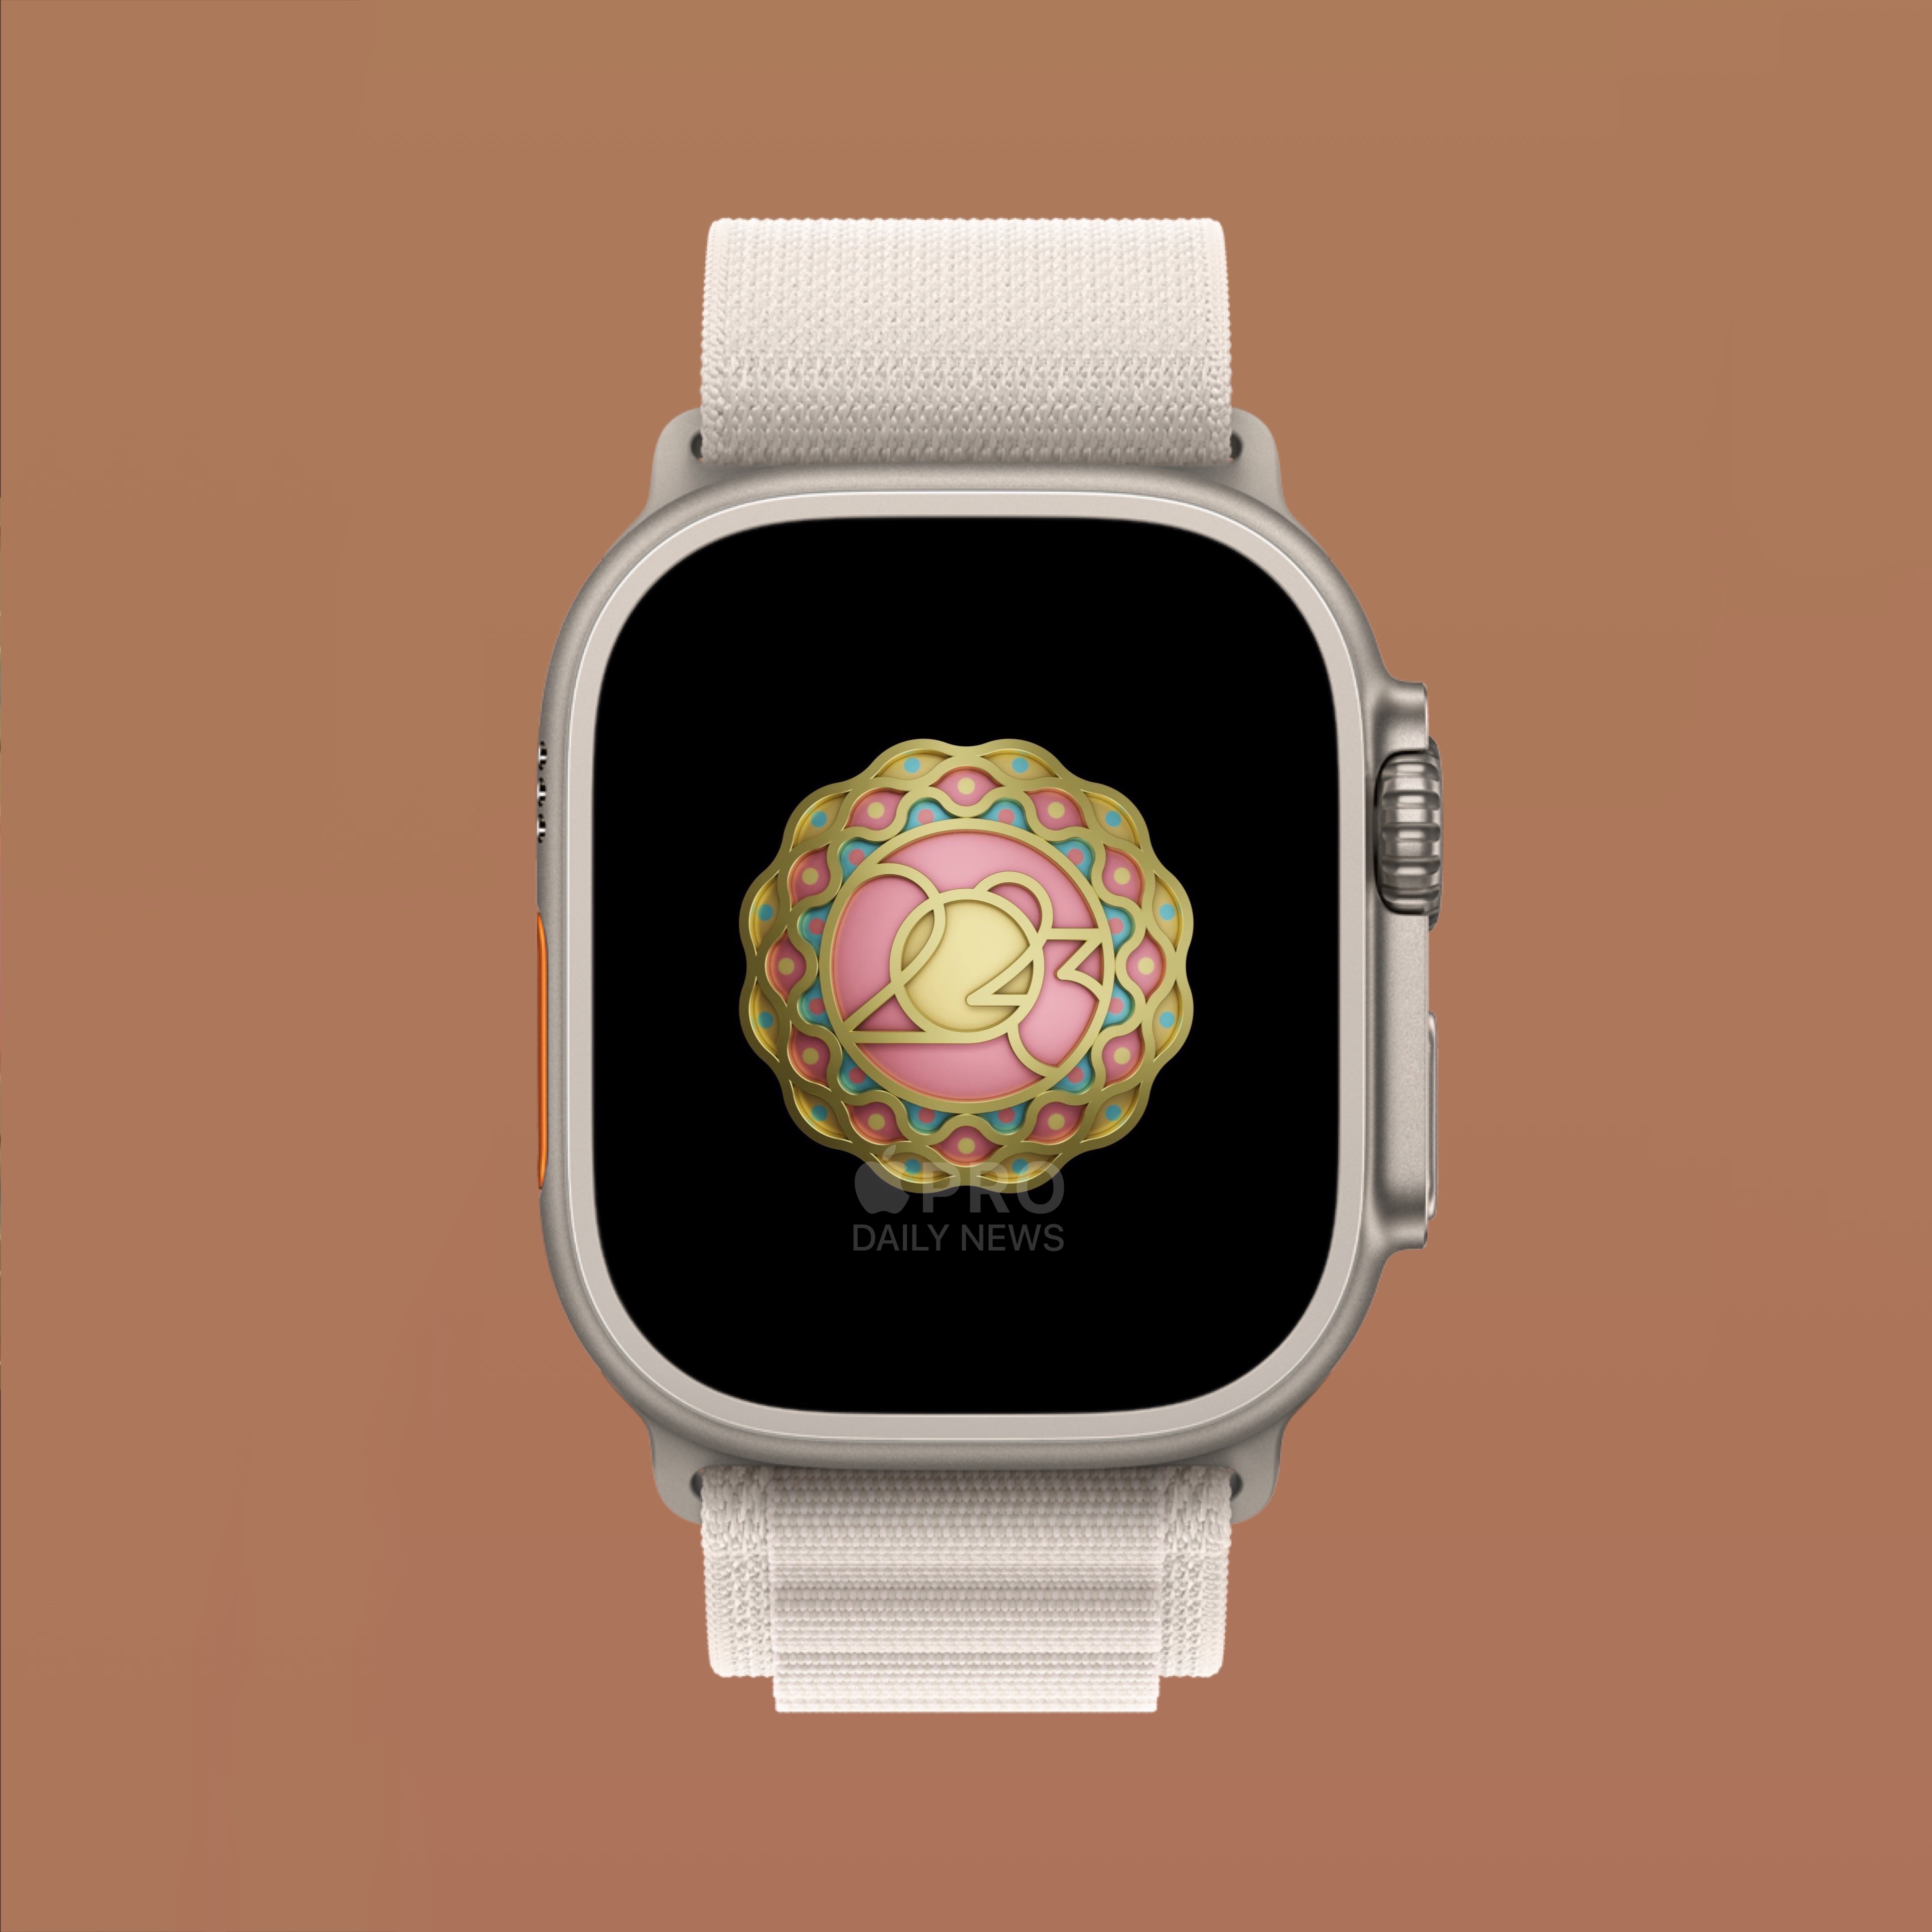 21 июня награда в честь Дня Йоги станет доступна обладателям Apple Watch